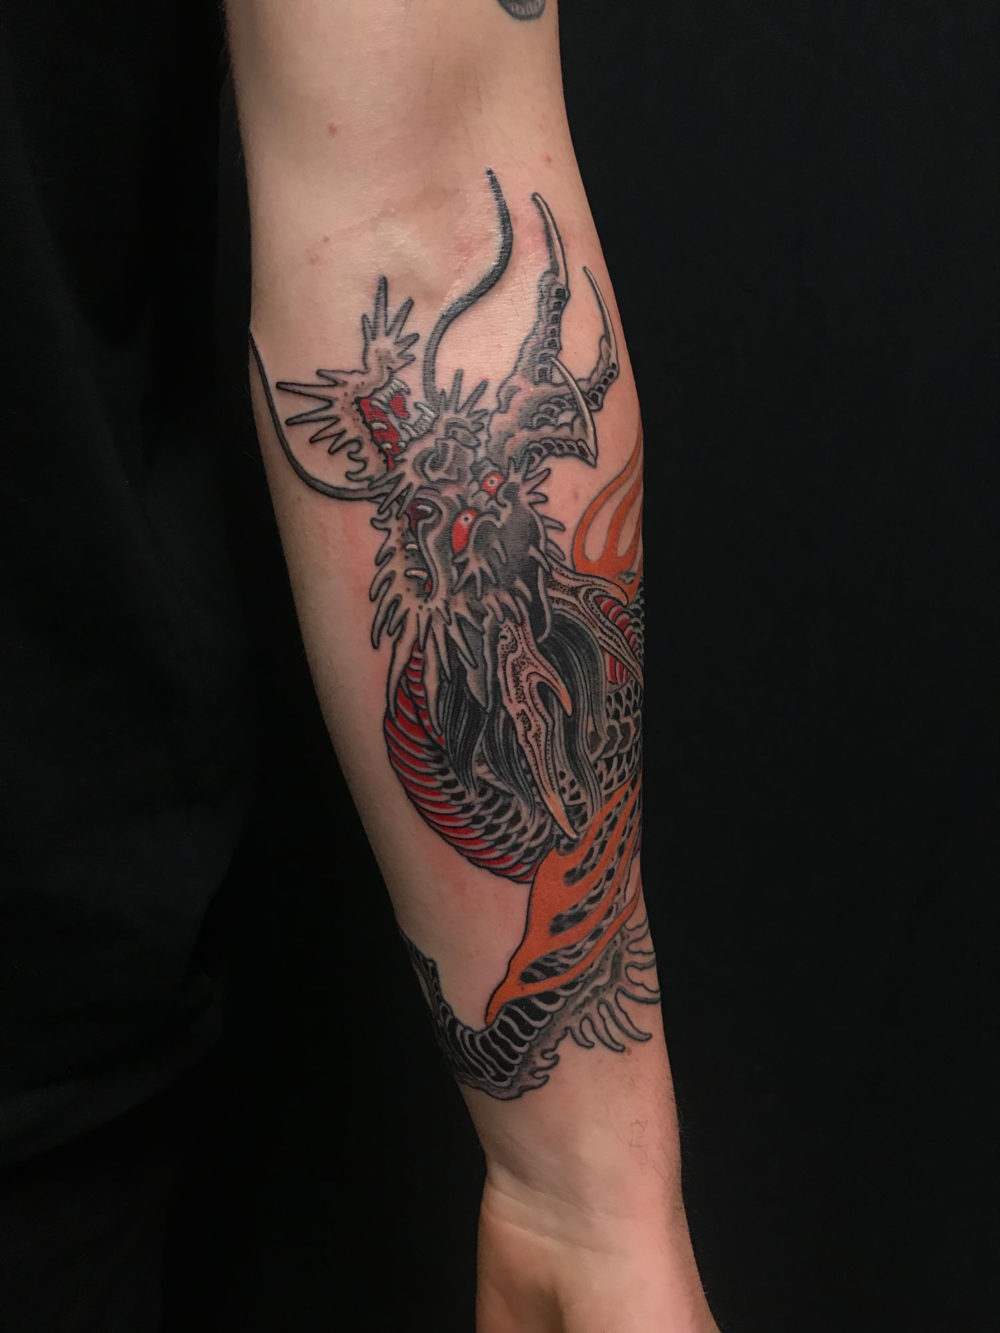 Small Dragon Tattoo